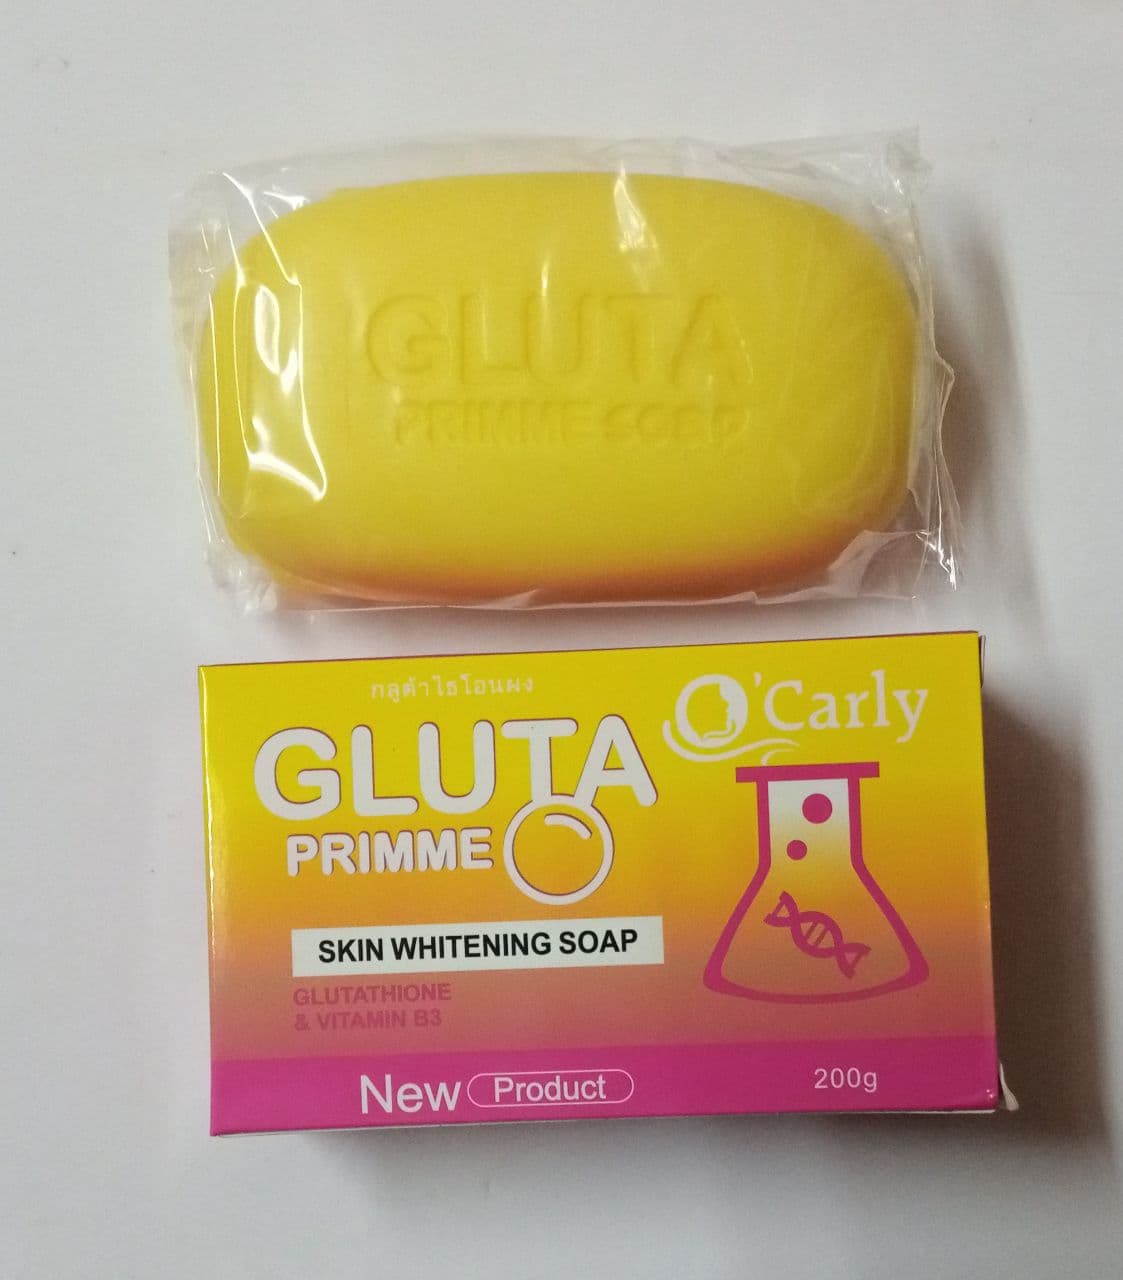 "GLUTA PRIME" Skin Whitening Soap